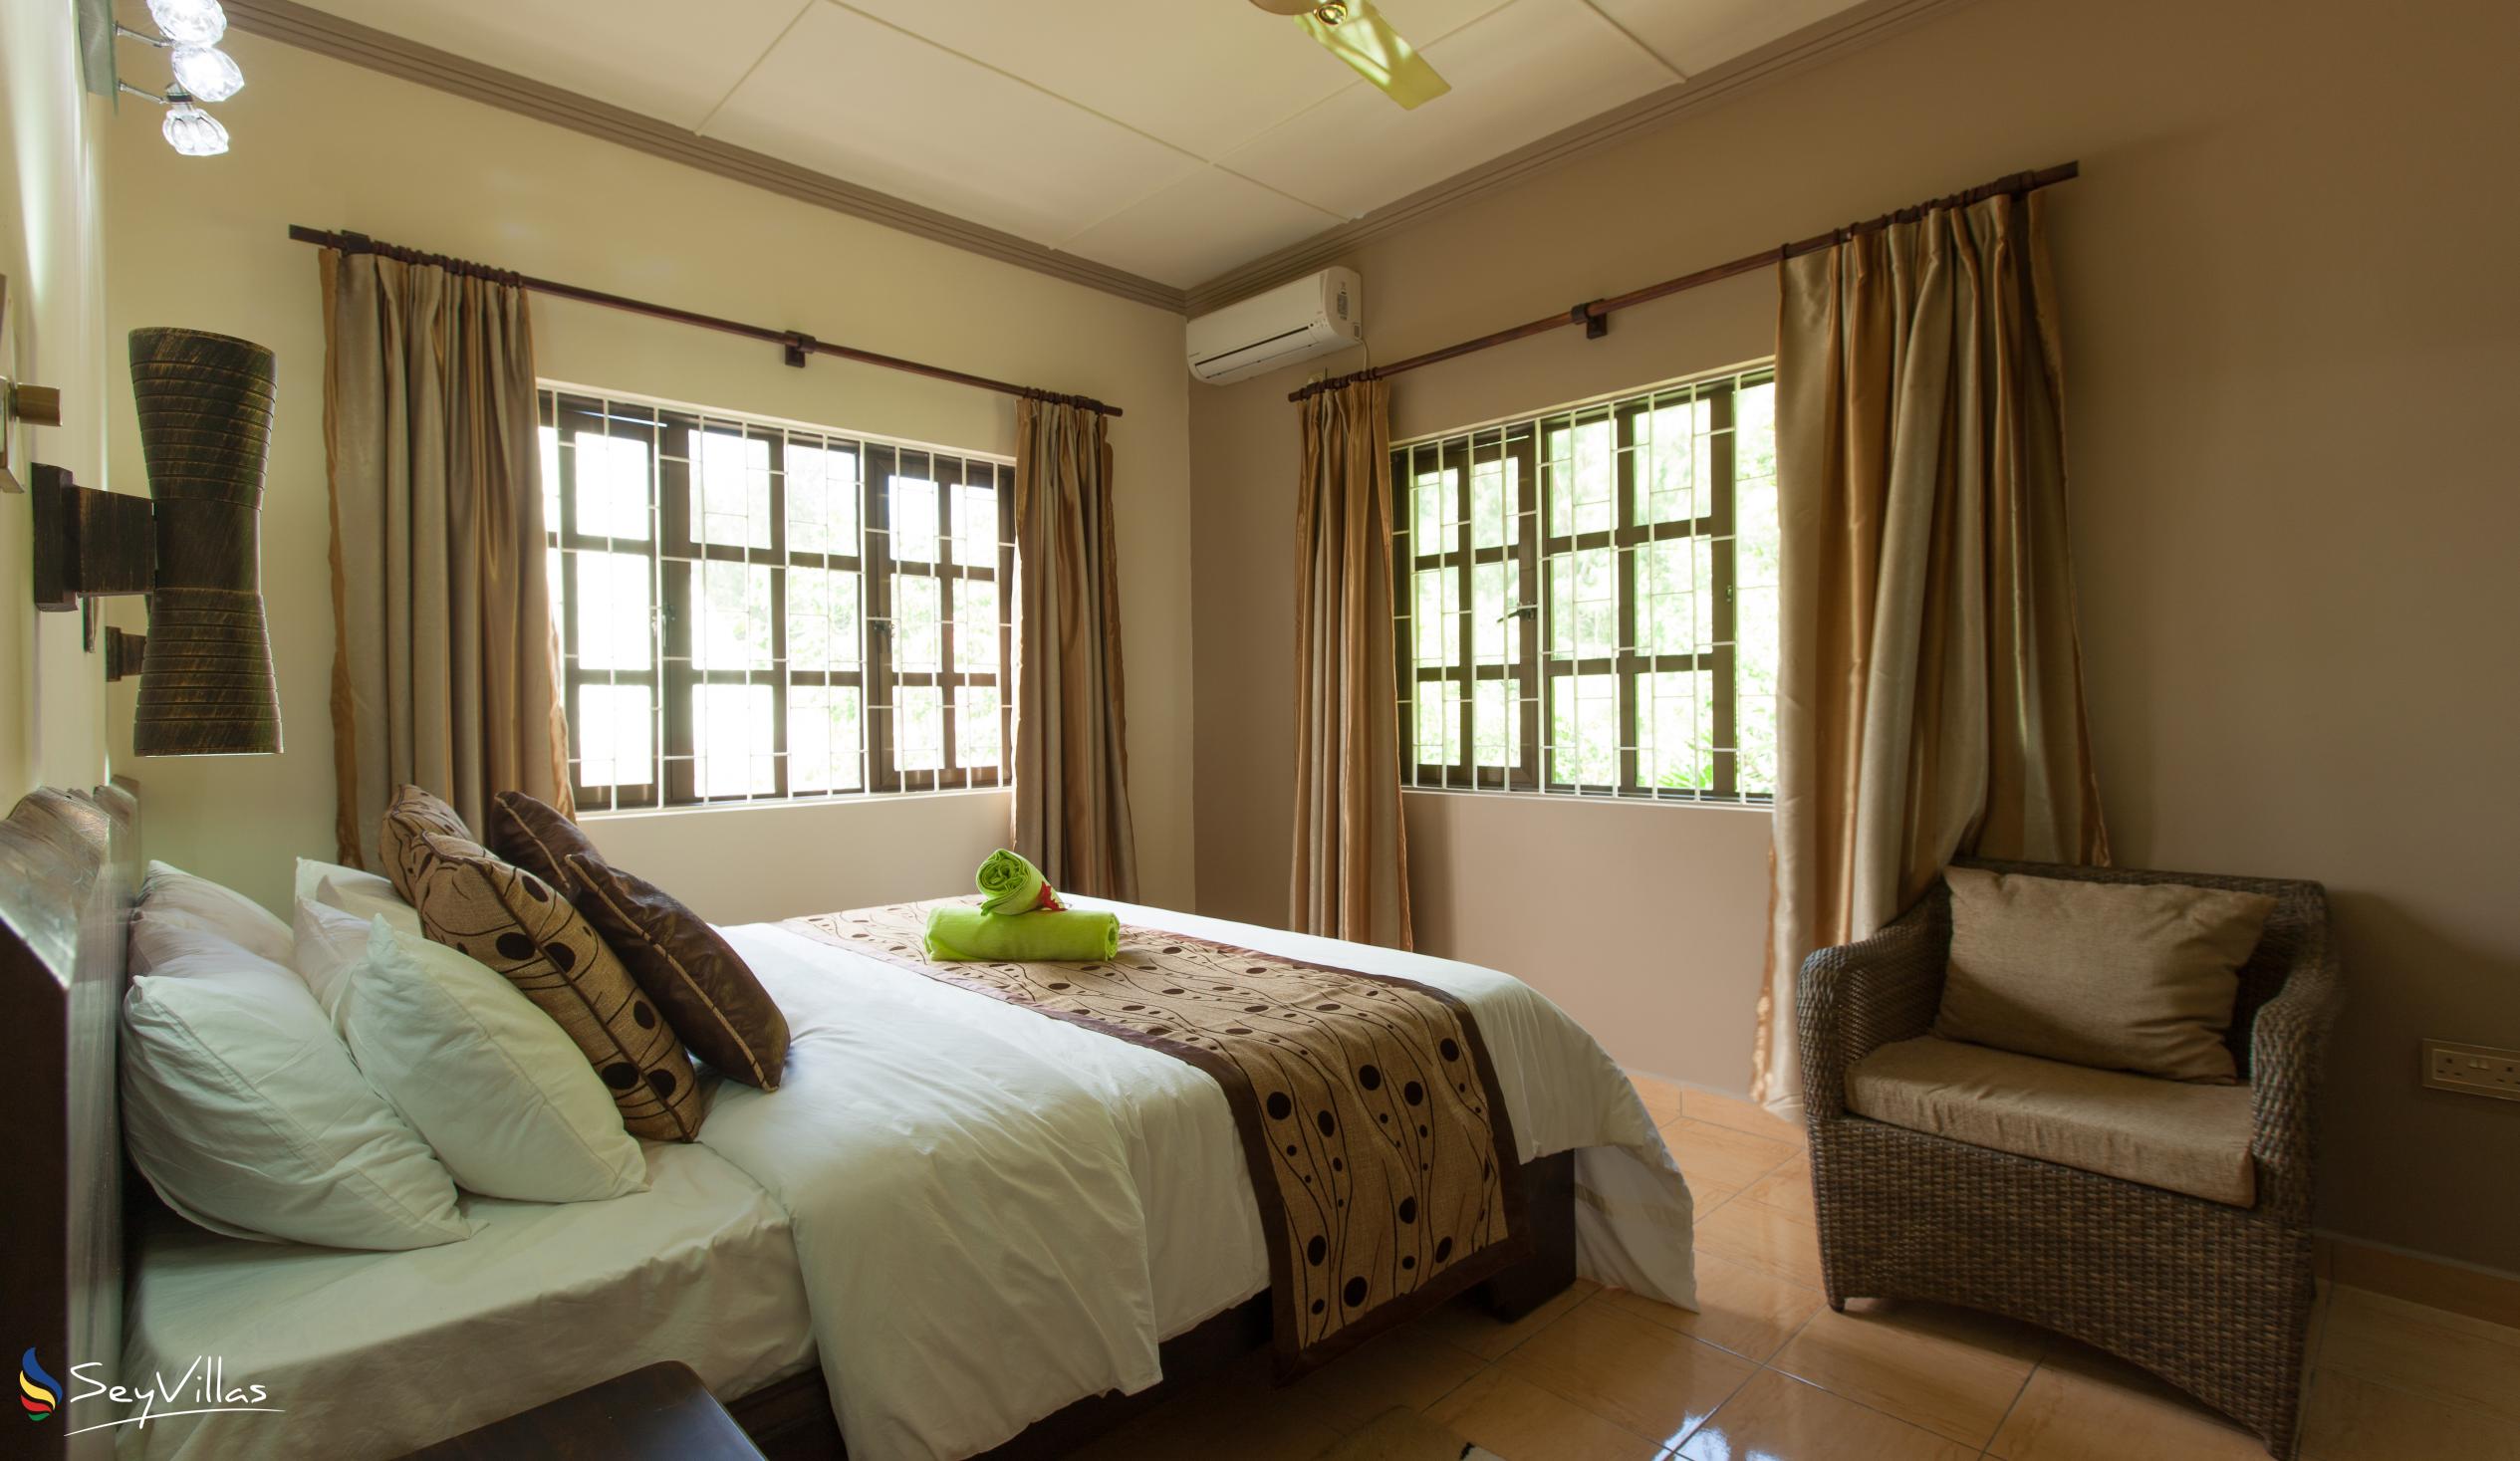 Foto 50: Chez Bea Villa - Appartamento con 2 camere - Praslin (Seychelles)